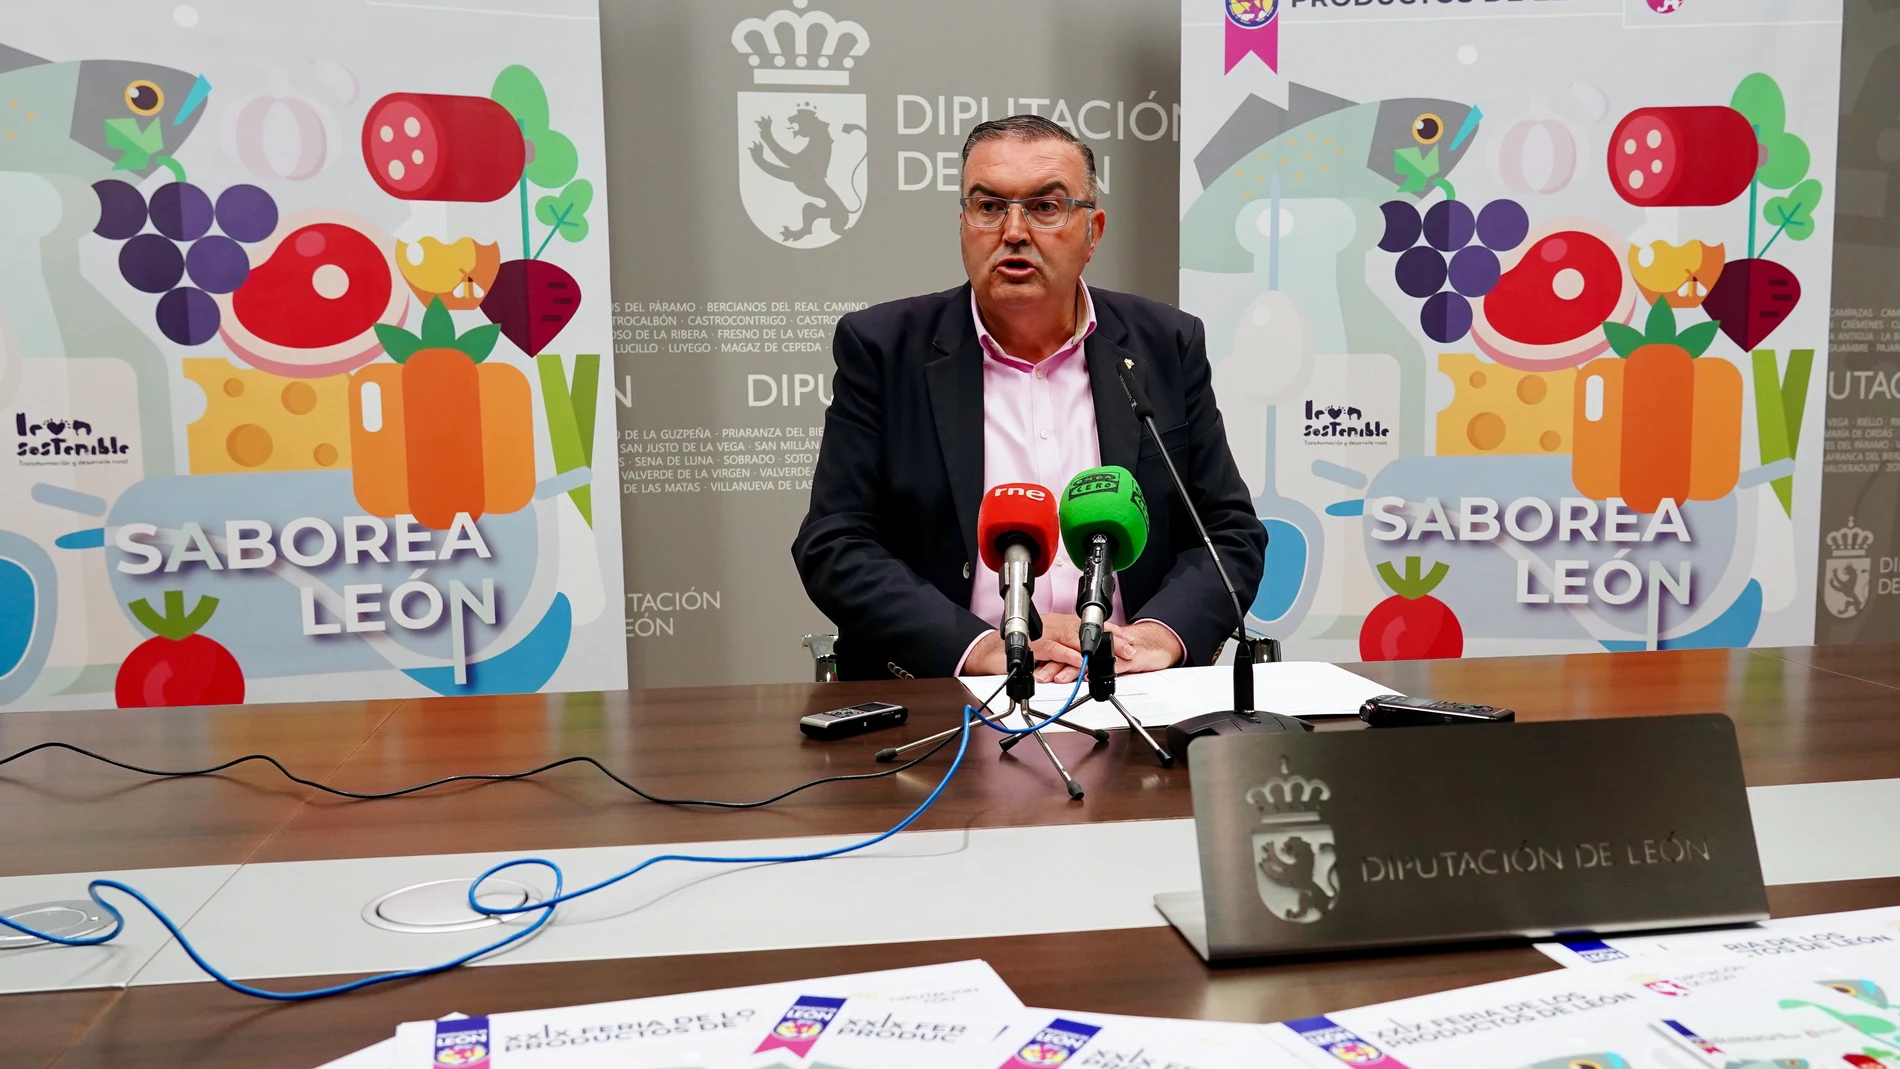 El responsable de la los Productos de León, Roberto Aller, presenta la Feria